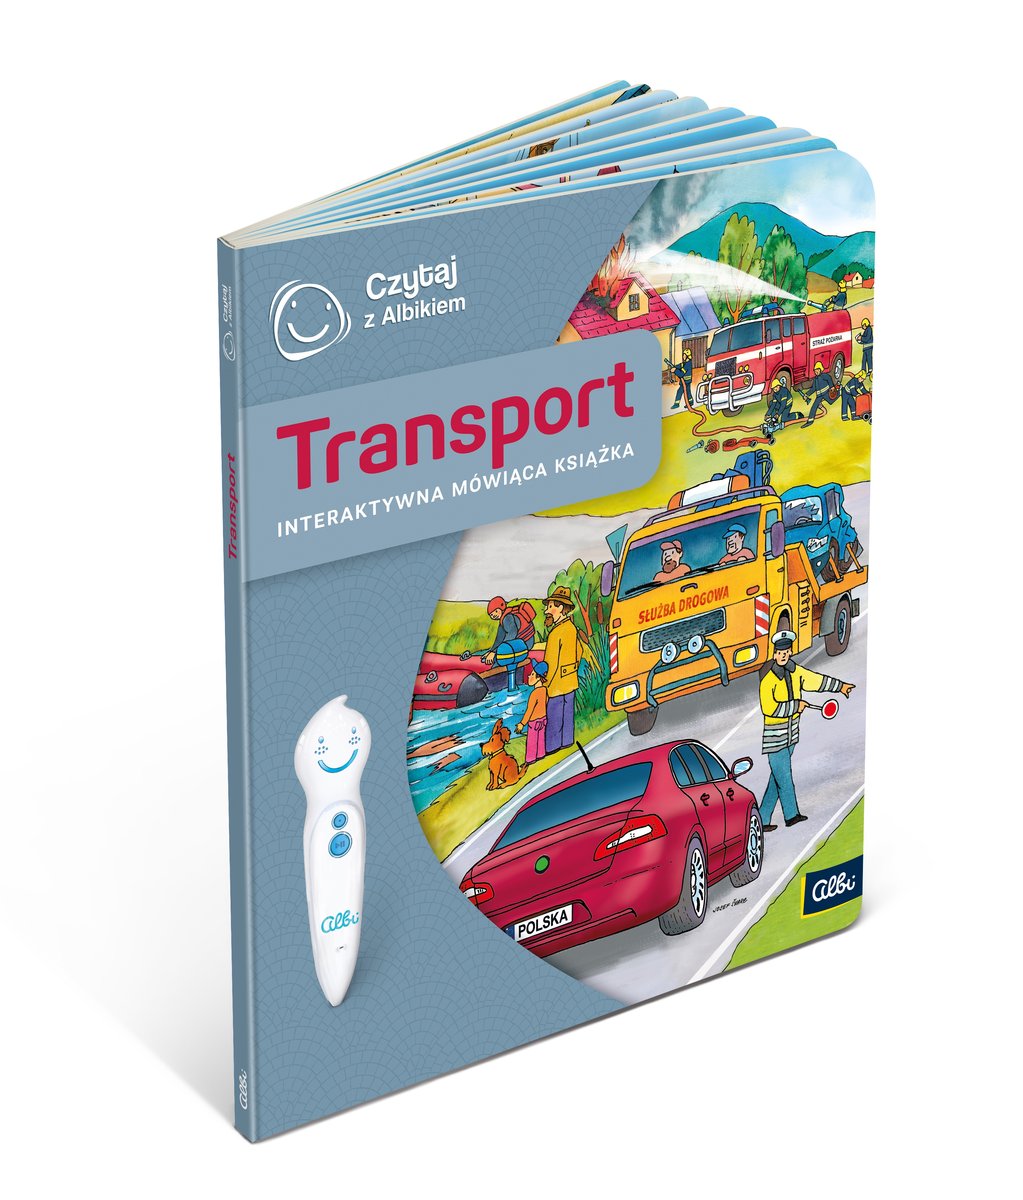 Фото - Інтерактивні іграшки Czytaj z Albikiem, Transport, interaktywna mówiąca książka